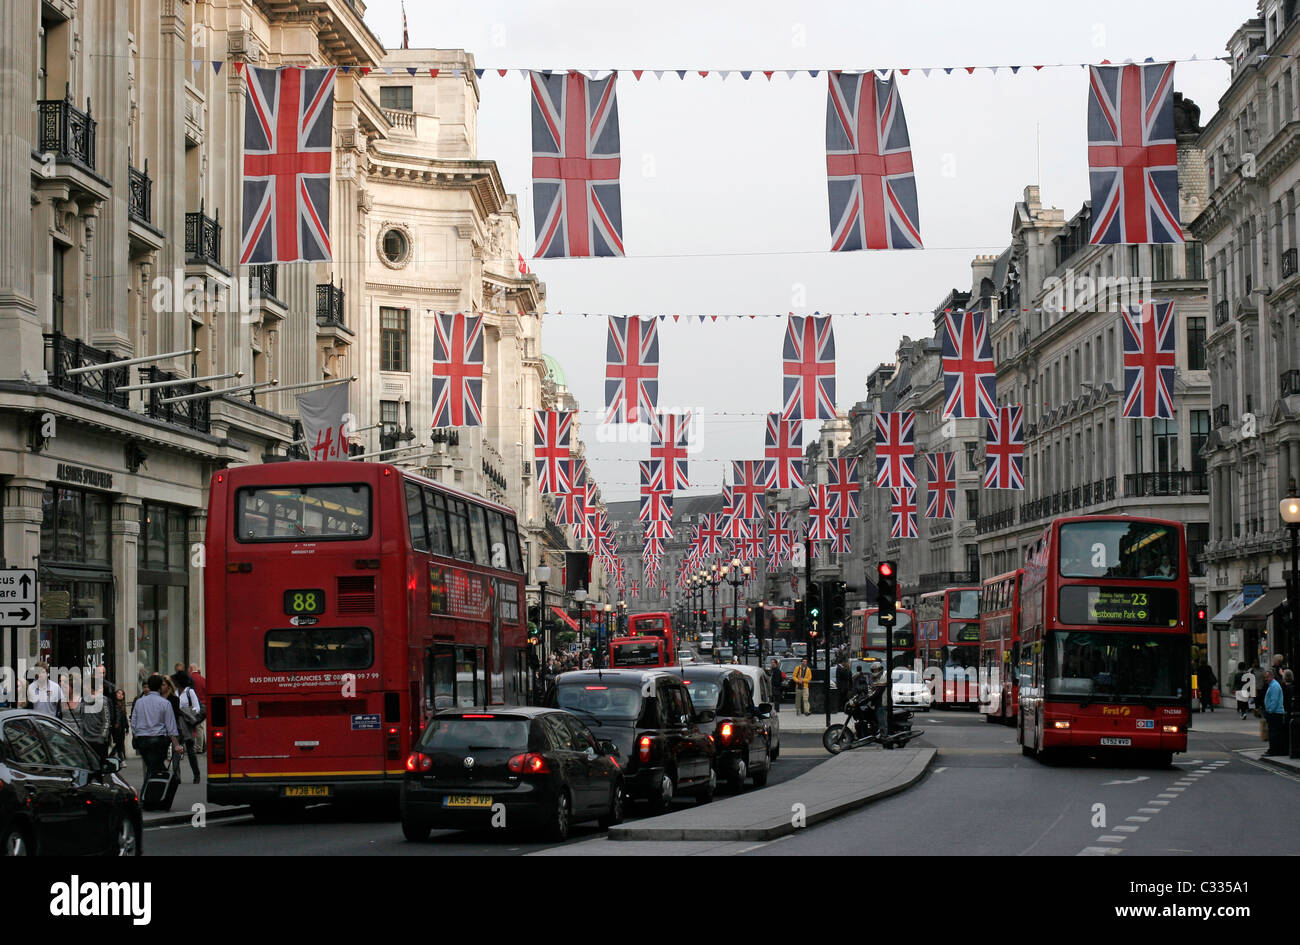 Drapeaux Union Jack de haut vol dans le quartier londonien de Regents Street pour célébrer le mariage royal sur 29-4-11 Banque D'Images